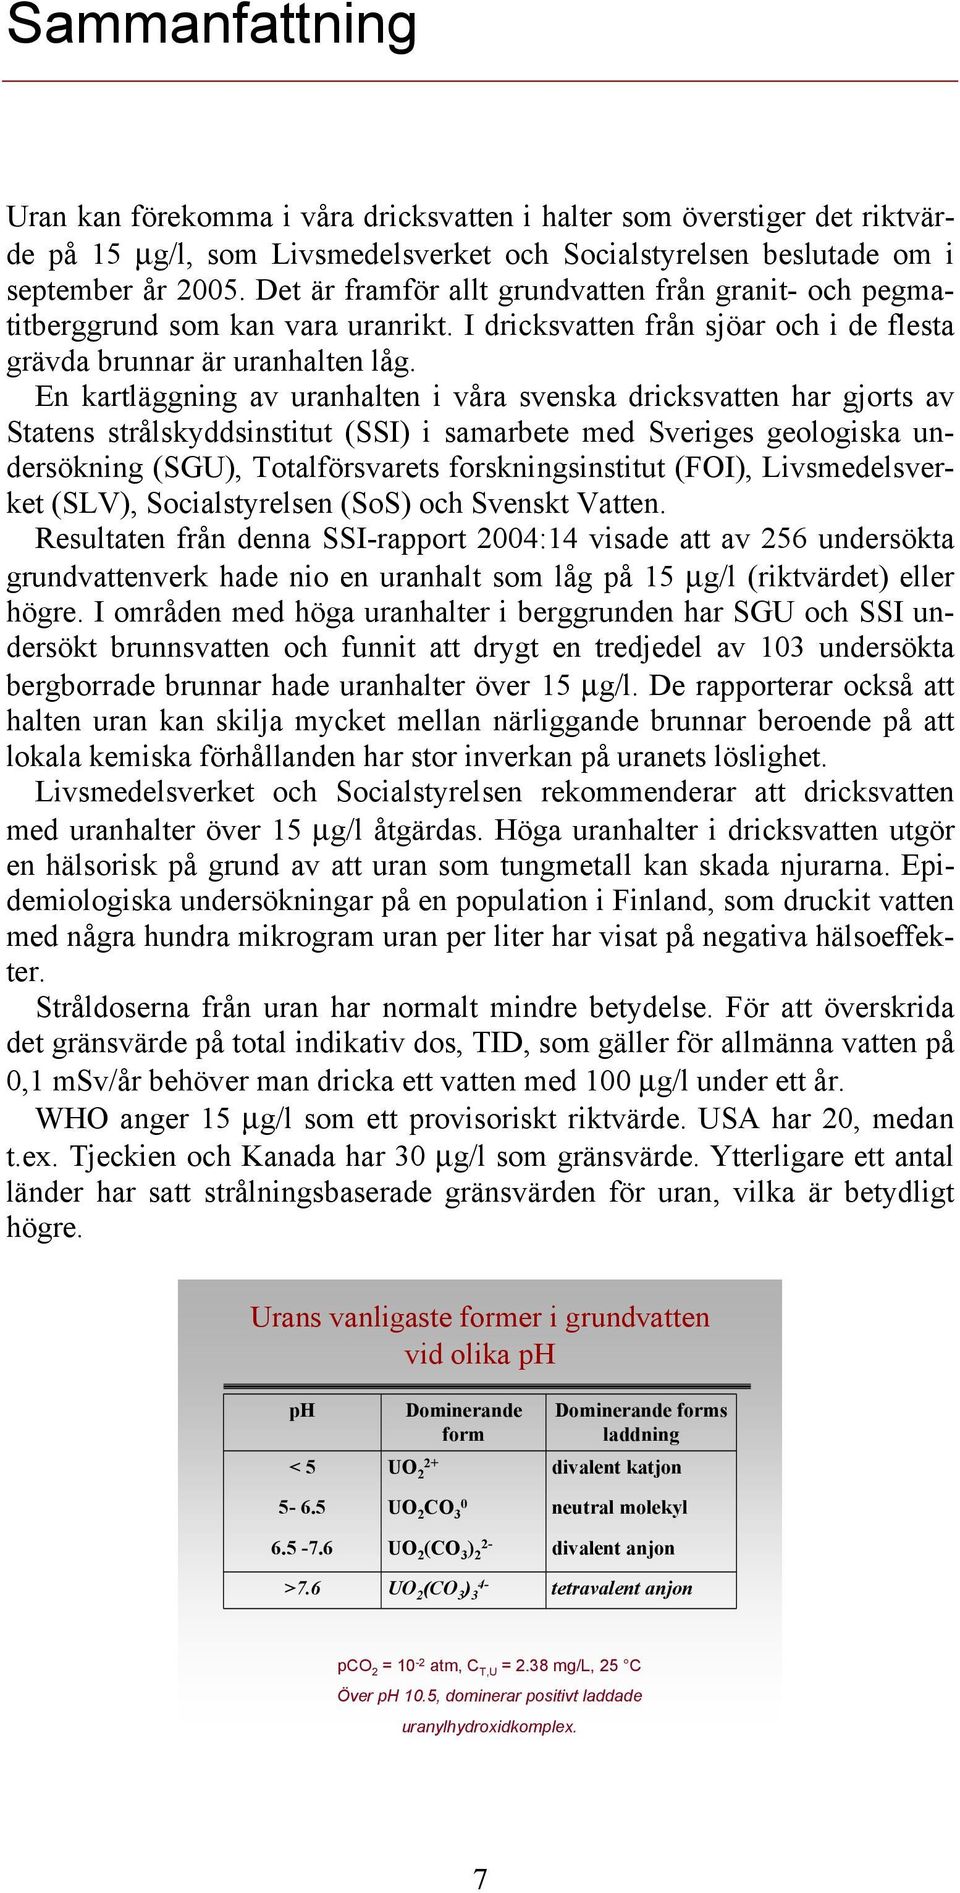 En kartläggning av uranhalten i våra svenska dricksvatten har gjorts av Statens strålskyddsinstitut (SSI) i samarbete med Sveriges geologiska undersökning (SGU), Totalförsvarets forskningsinstitut